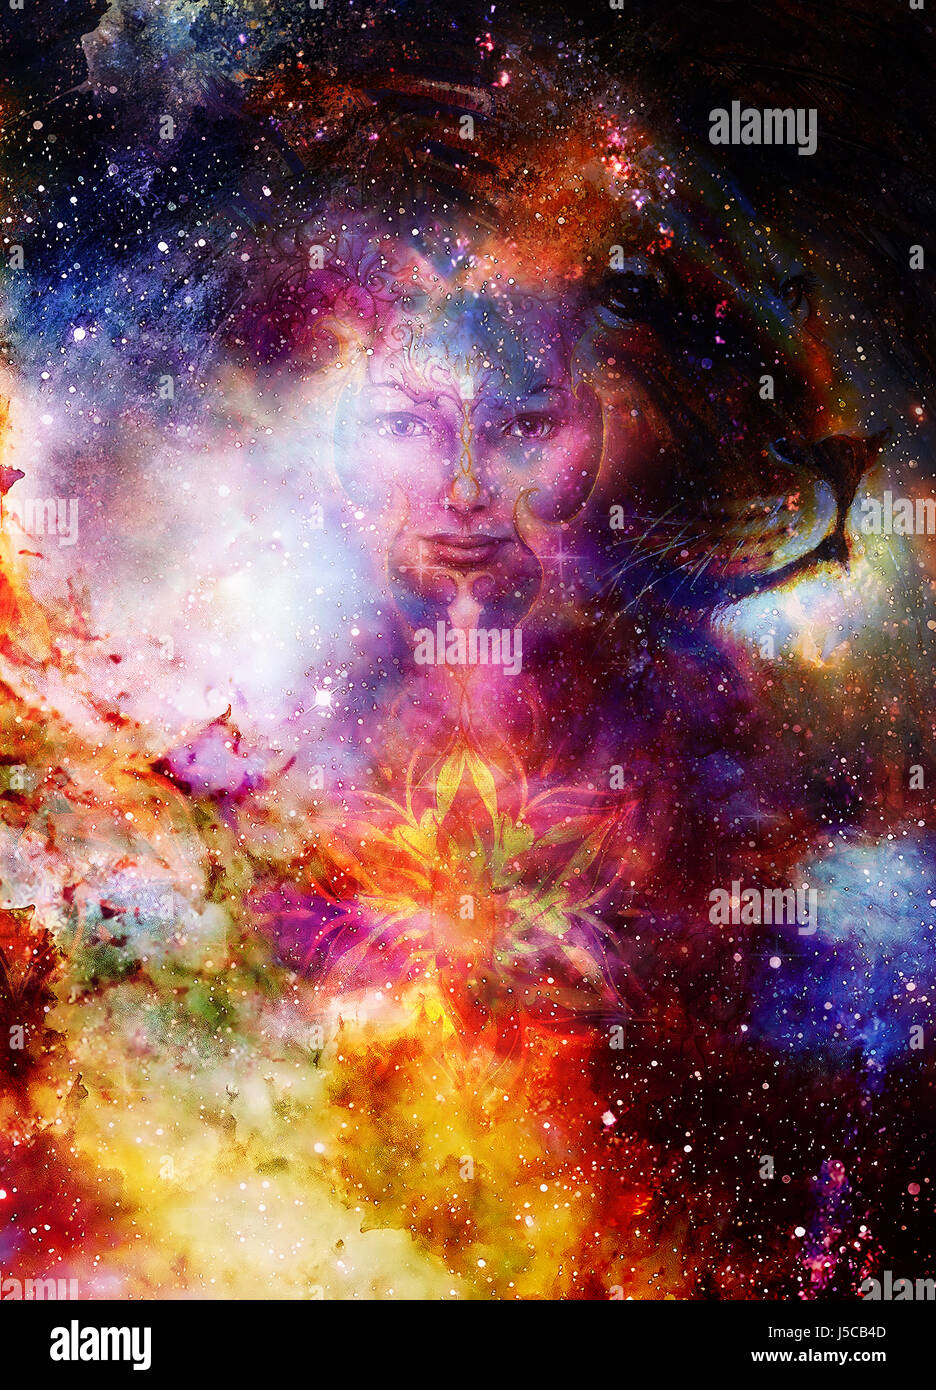 Femme Goodnes et lion et de mandala. Arrière-plan de l'espace cosmique. Mystic femme avec oiseau phoenix tatouage au visage. contact avec les yeux Banque D'Images